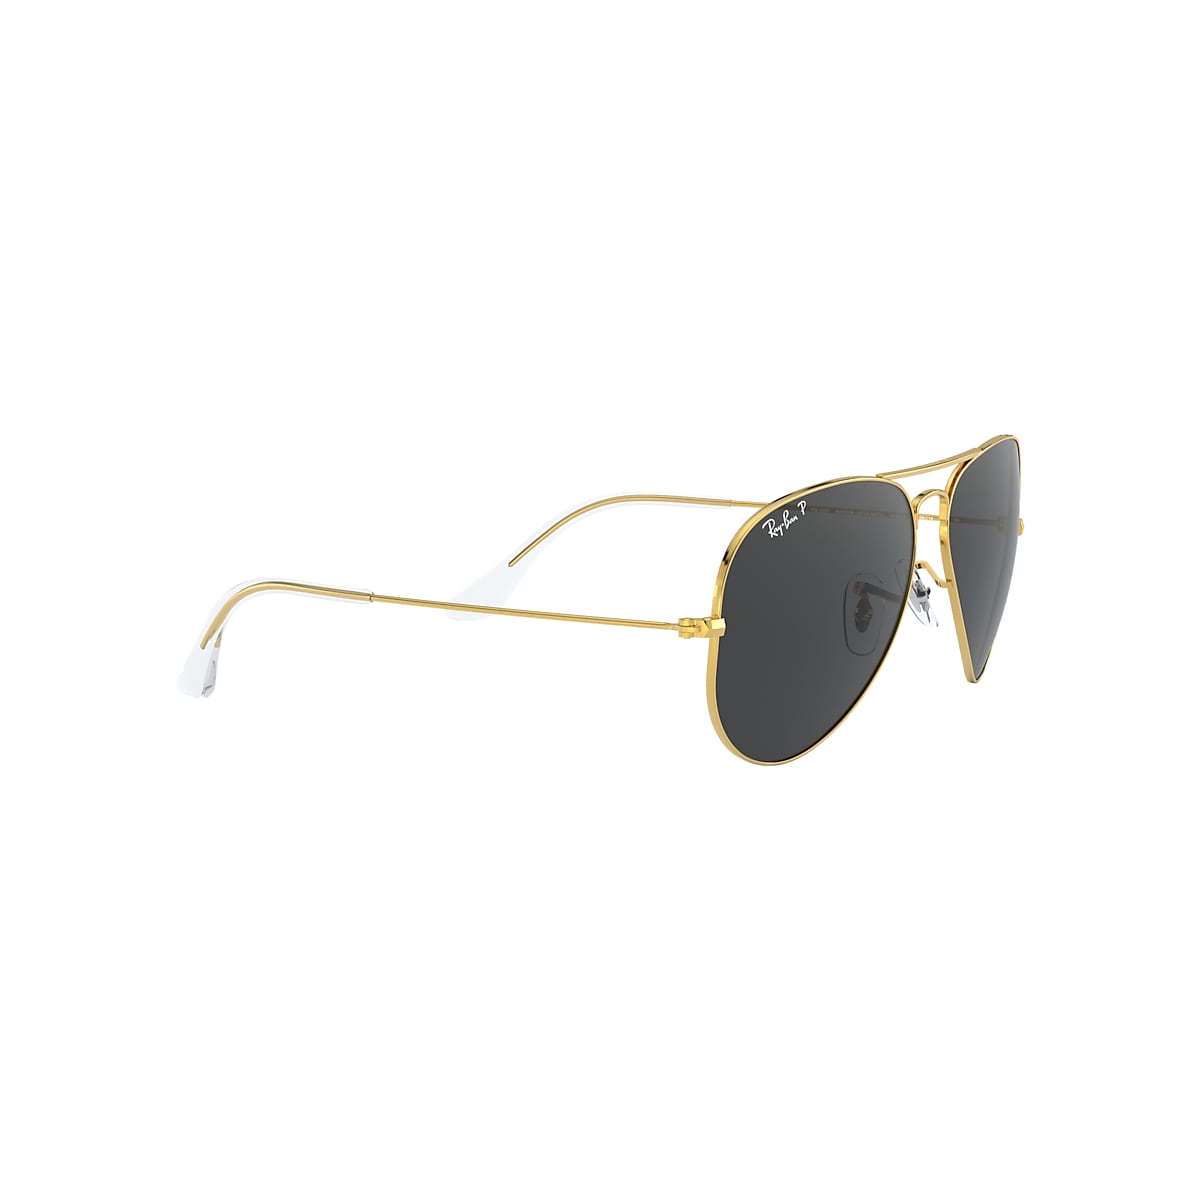 Buy Airomade Aviator Louis Kouros Black-Gold Sunglasses For Men